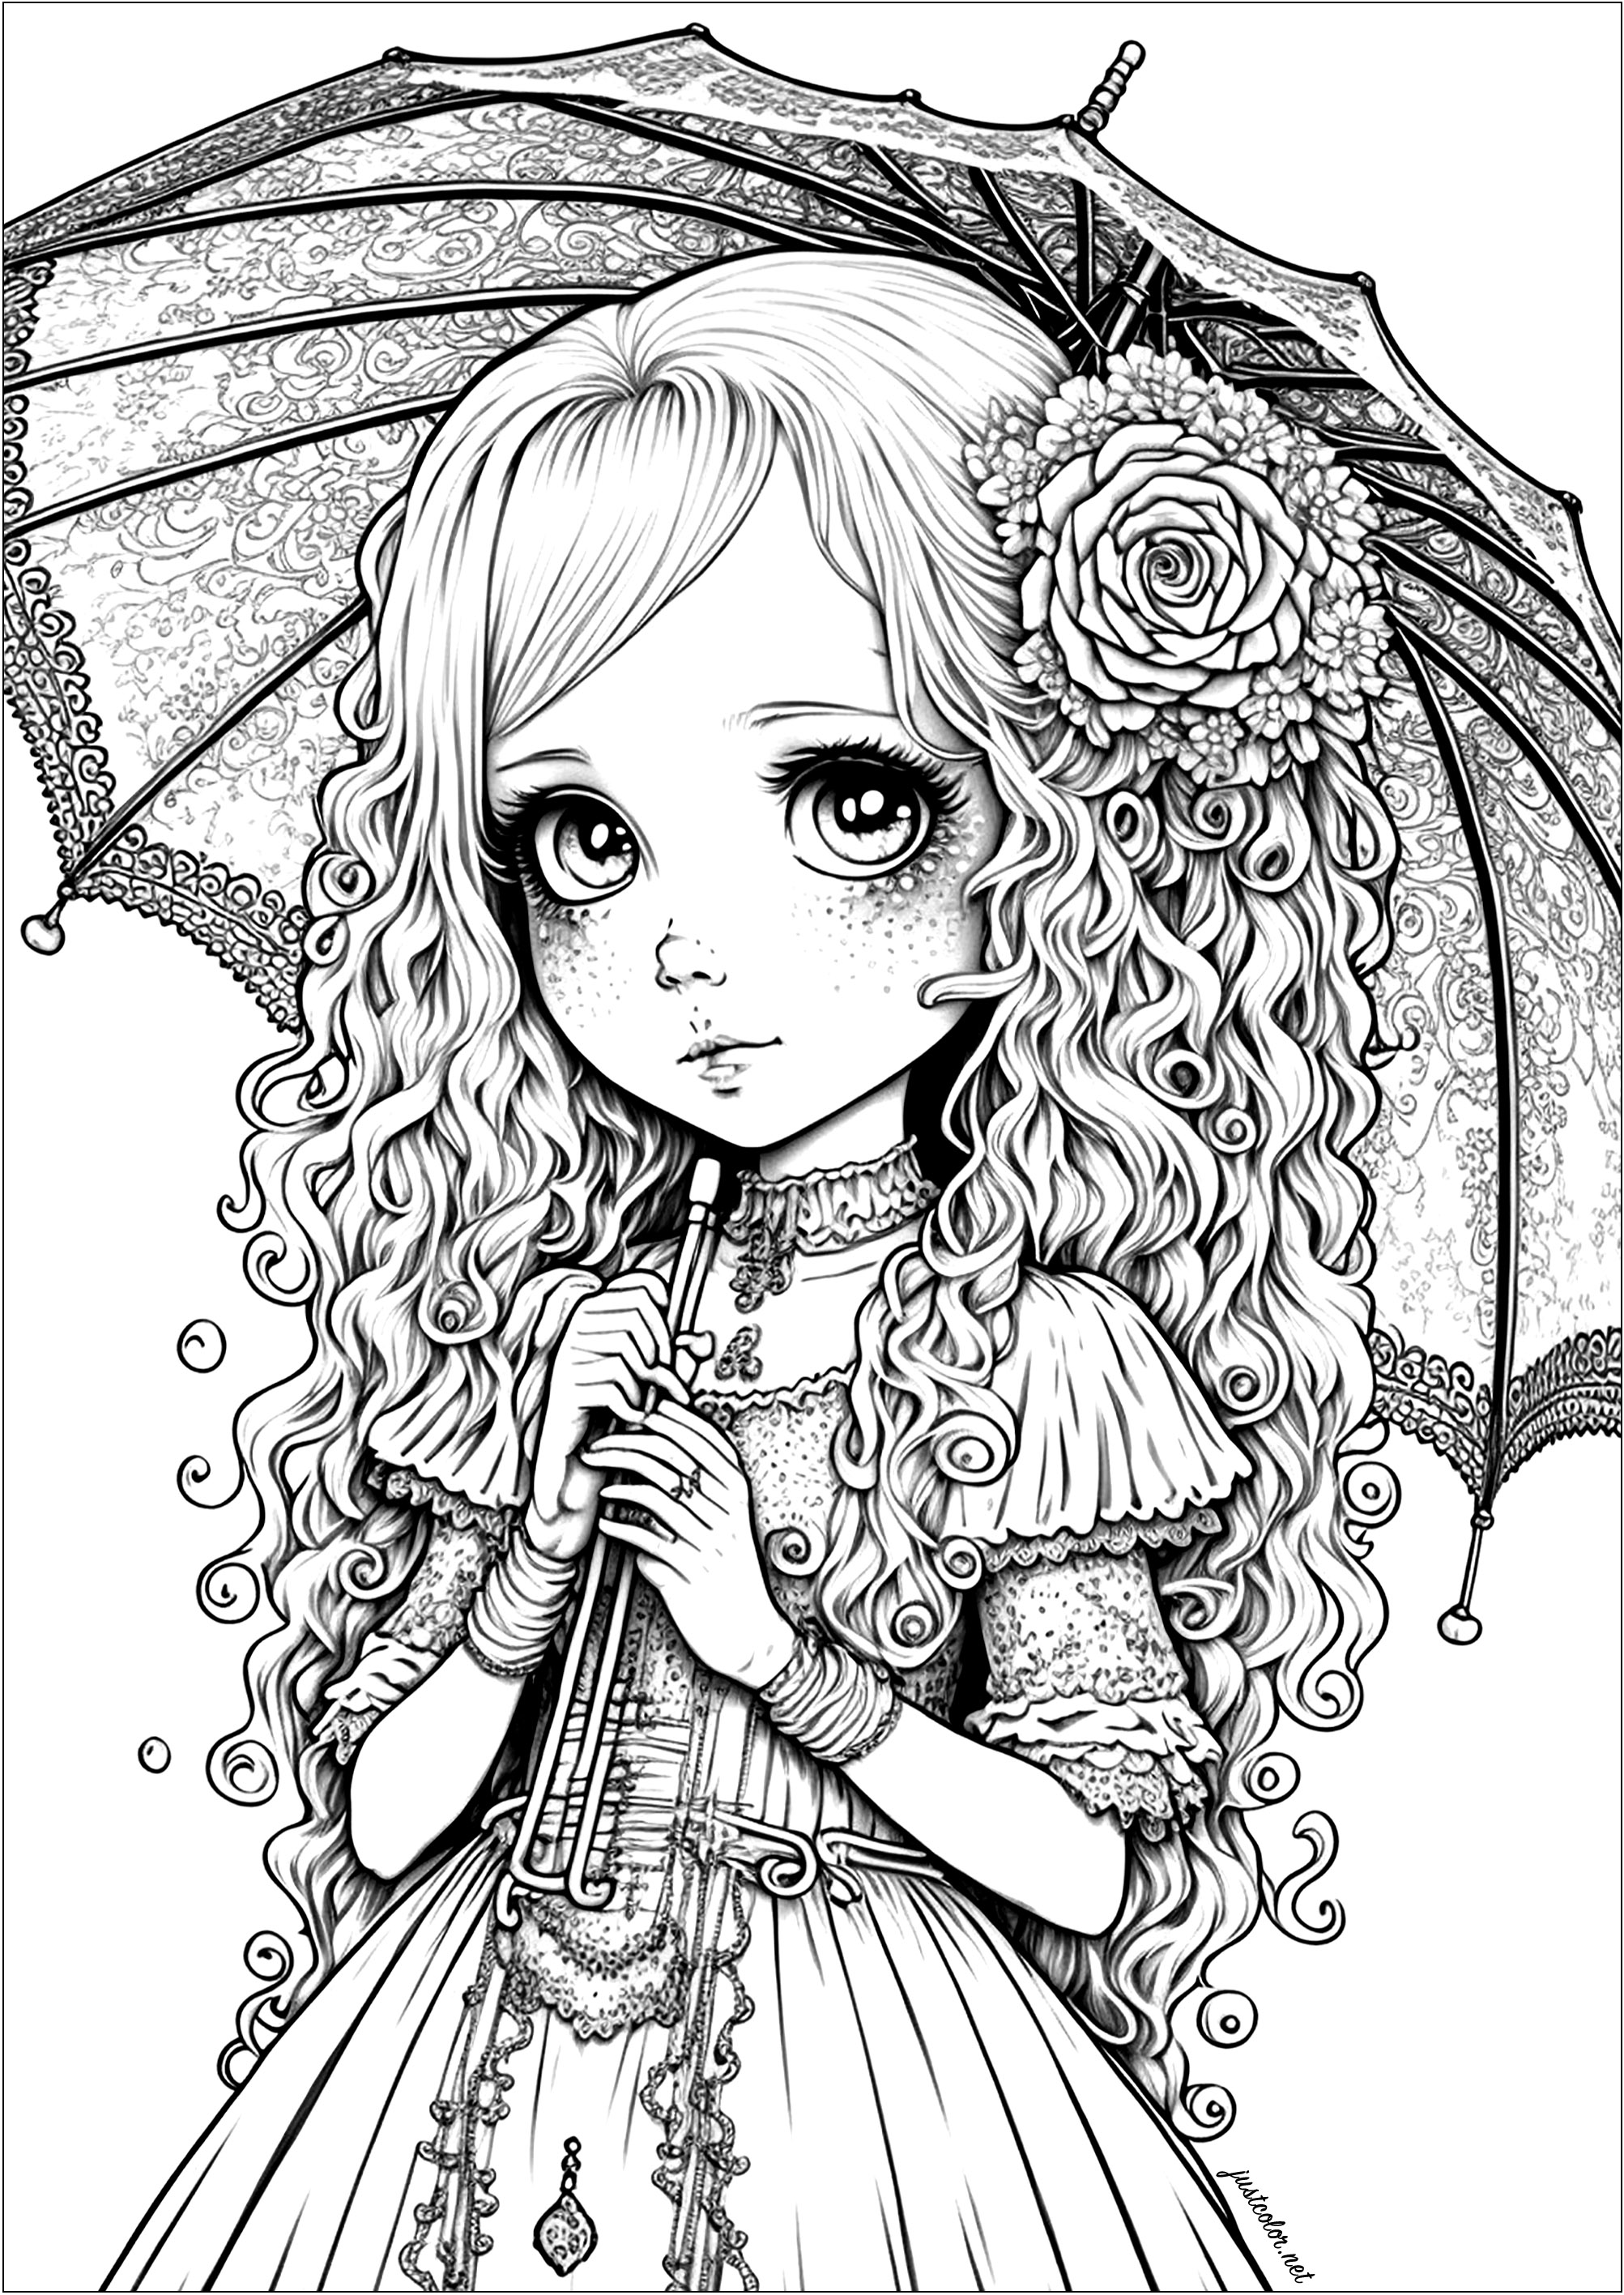 Ein hübsches Malbuch mit einem wunderschön gezeichneten jungen Mädchen im Anime/Manga-Stil. Diese Malvorlage ist eine wahre Augenweide! Eine schöne Zeichnung eines jungen Mädchens, wunderschön in einem animierten / Manga-Stil gezeichnet. Sie können Ihrer Fantasie freien Lauf lassen und eine einzigartige, persönliche Ausmalvorlage erstellen.